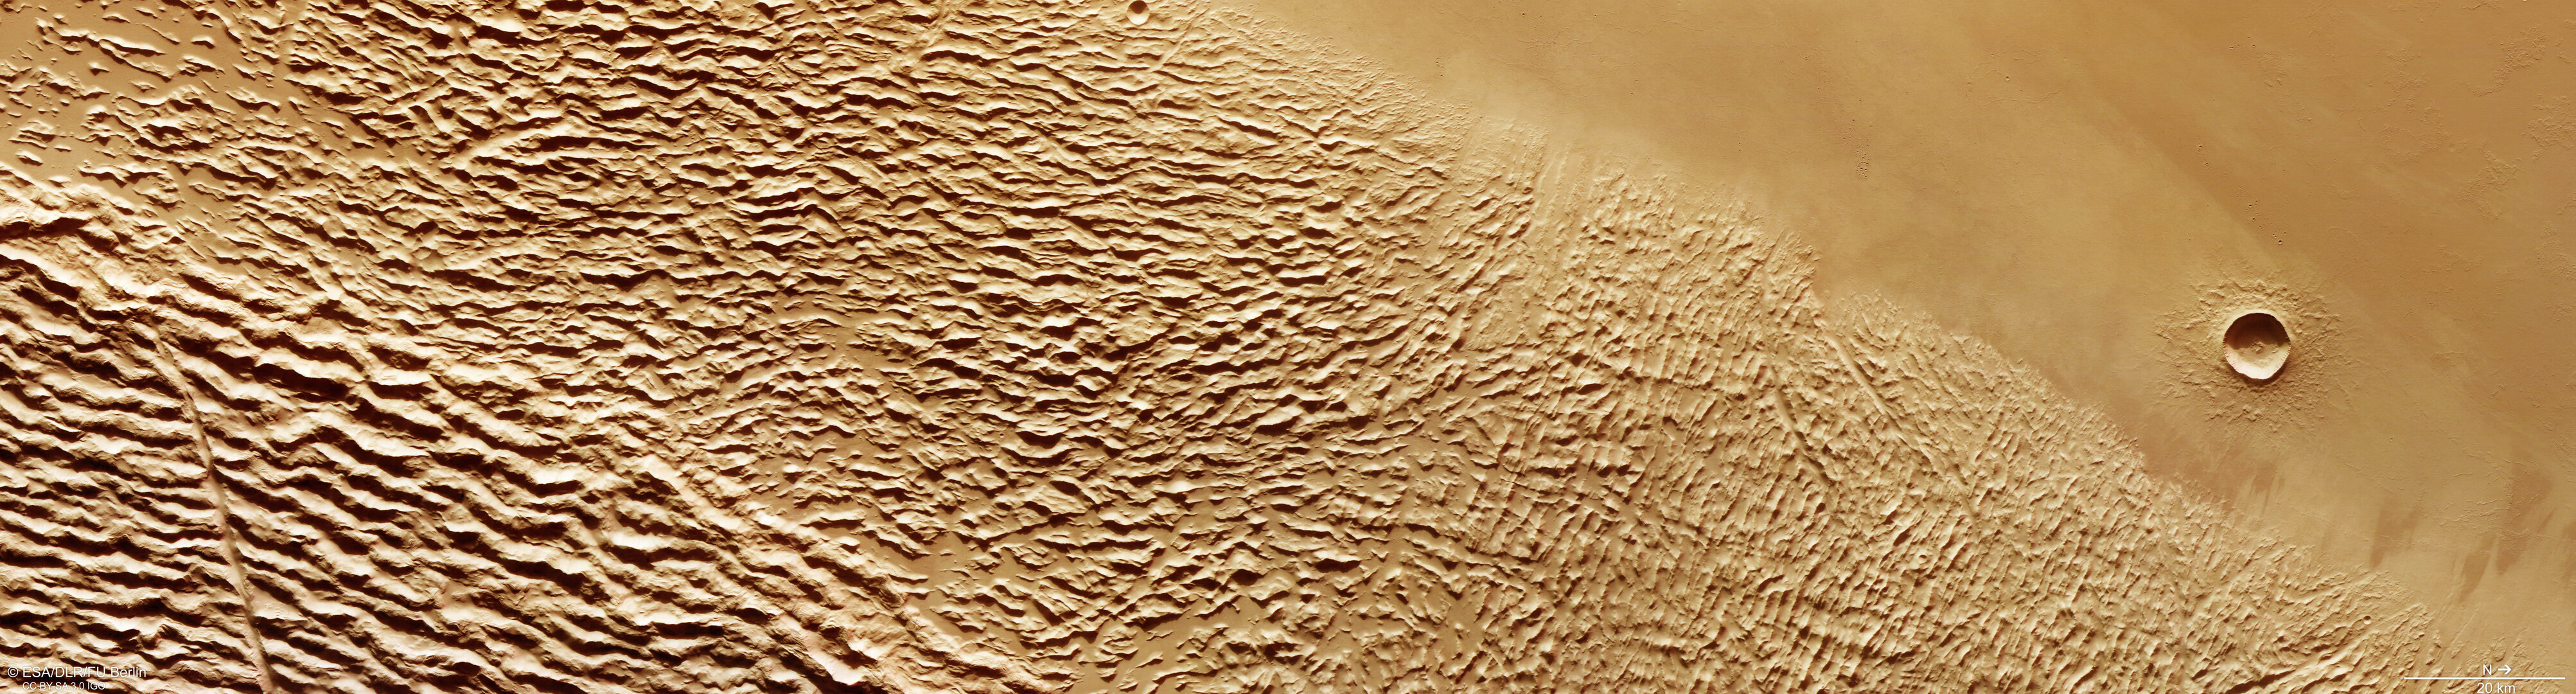 Lycus Sulci und Yelwa-Krater auf dem Mars, gesehen vom Mars-Express-Orbiter im Januar 2023.